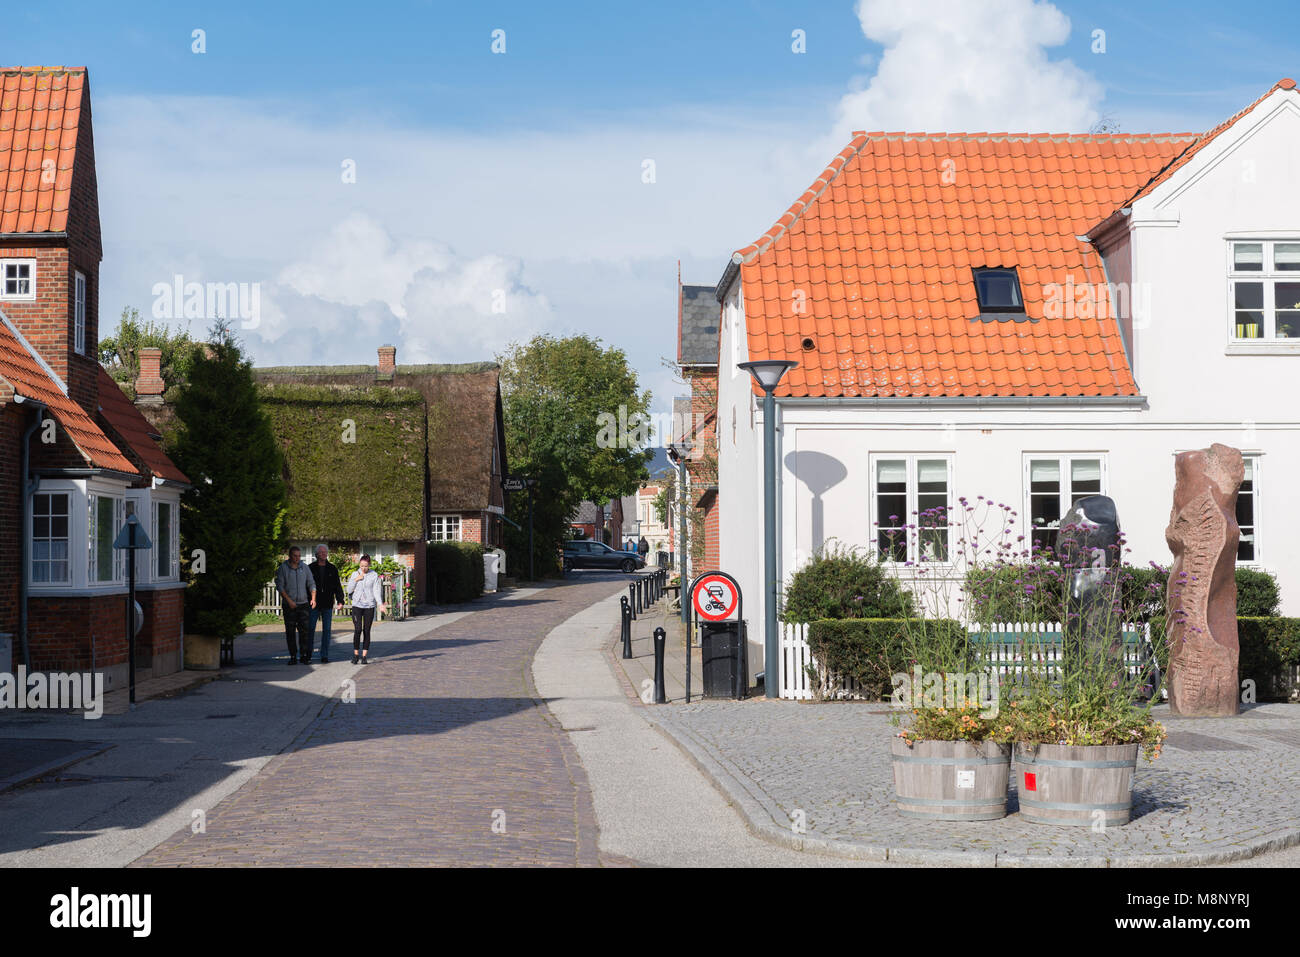 Cobble stone street dans le centre-ville, dans des maisons typiquement danois Nordby, île d'adresses importantes Tidevand Færgeruter Lufthavne Bil, Jutland, Danemark, Scandinavie Banque D'Images